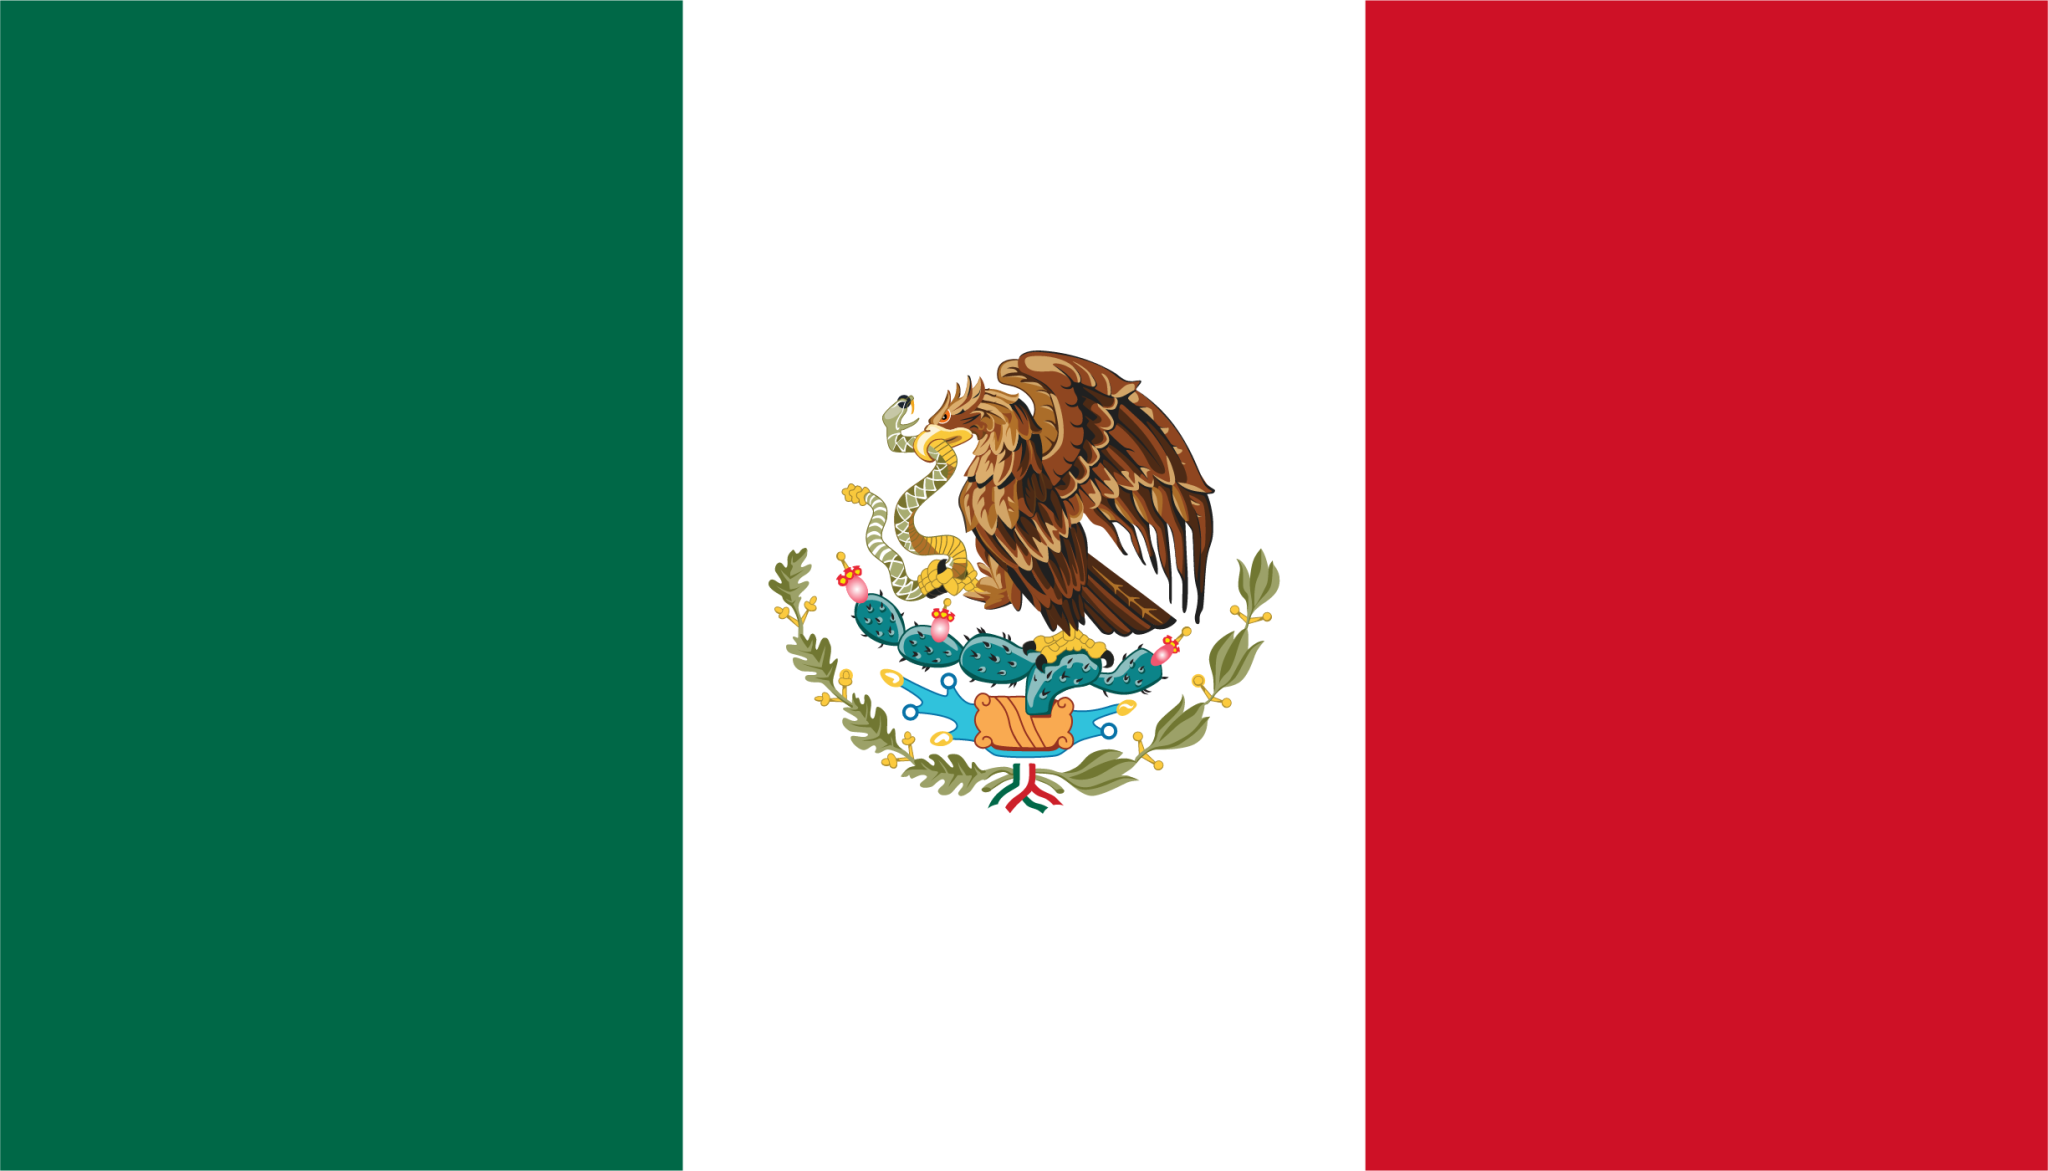 mx flag icon